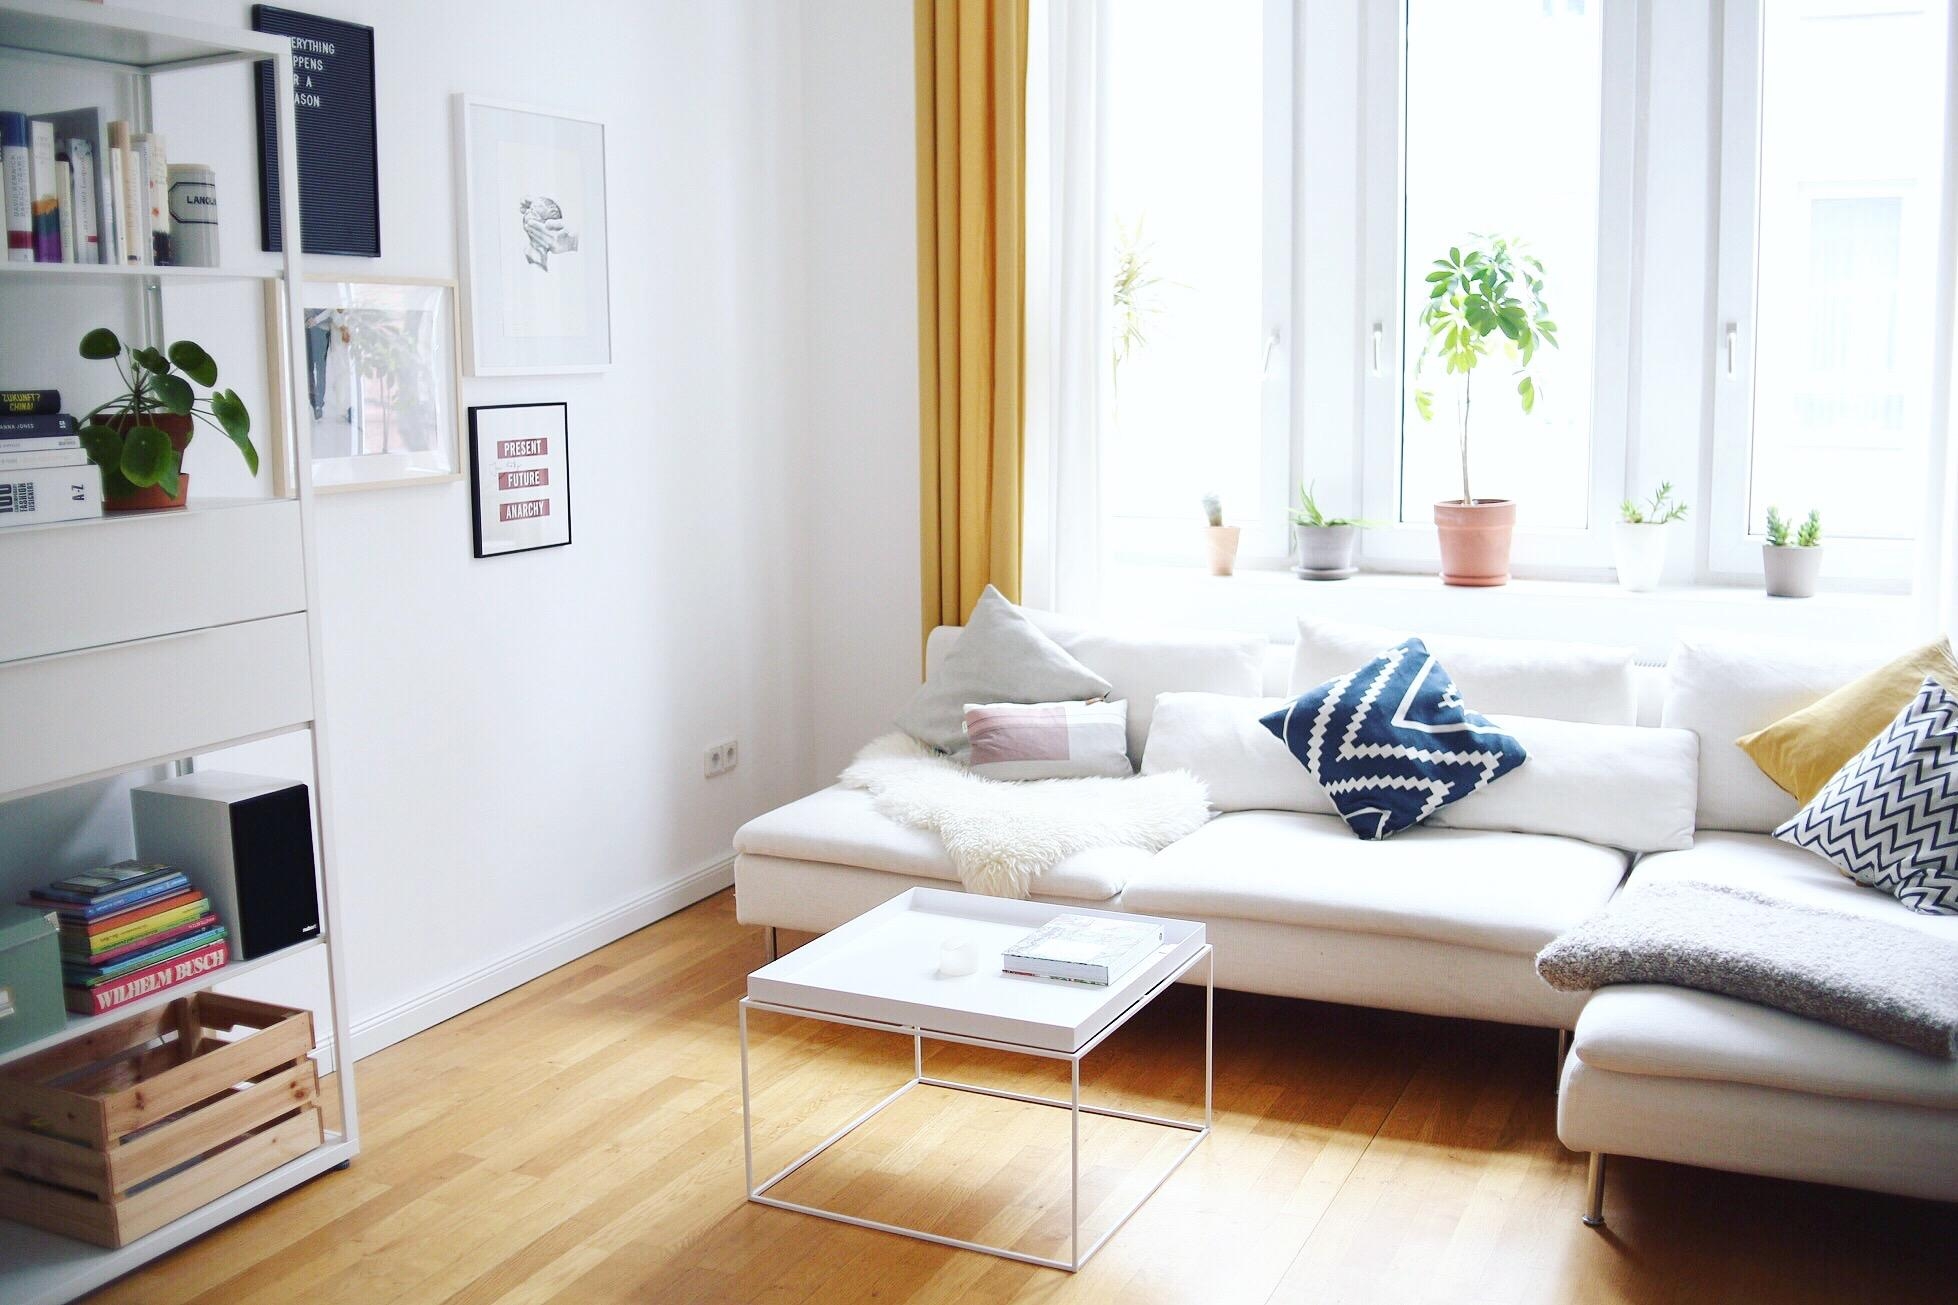 Licht! 
#lightlovers #wohnzimmer #altbau #minimalism #scandinaviandesign #slowliving 